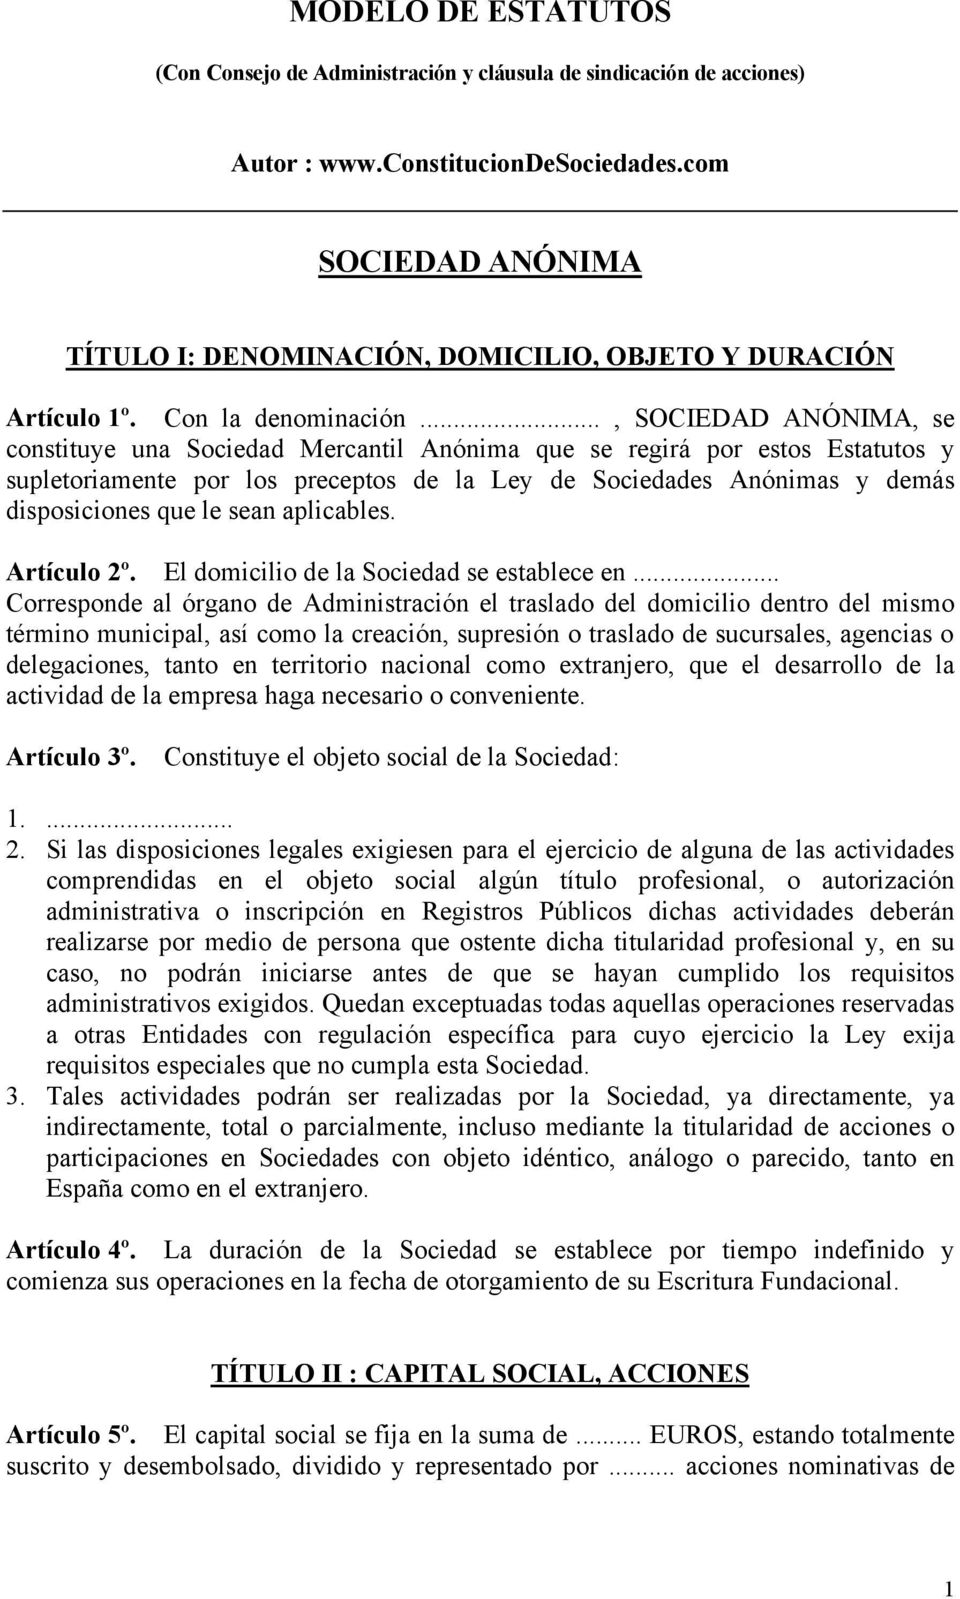 MODELO DE ESTATUTOS SOCIEDAD ANÓNIMA - PDF Free Download